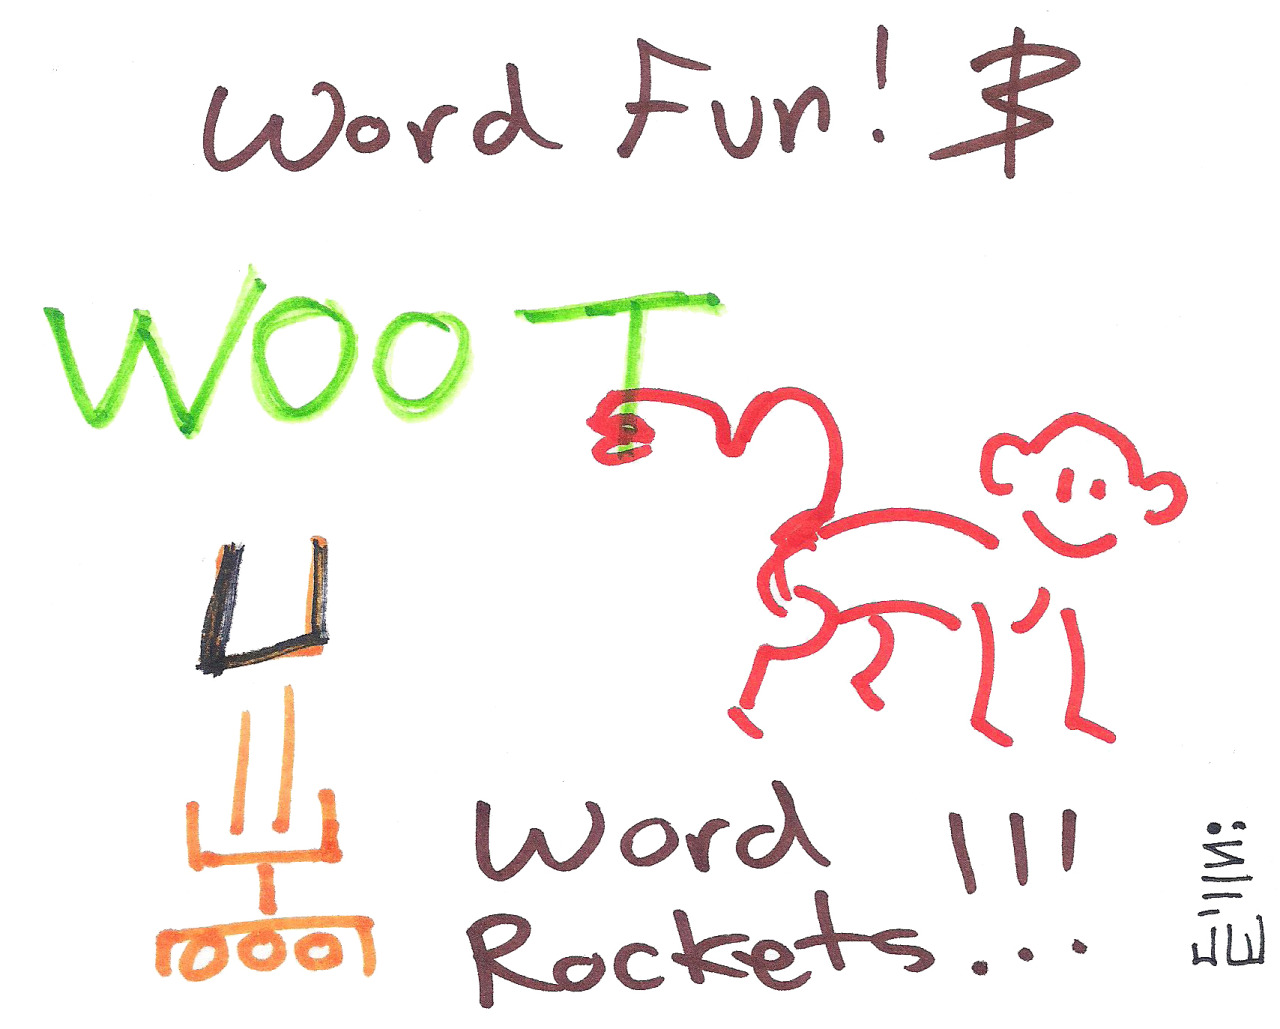 Monkeys make Internet slang, while rockets shoot vowels at the sky!